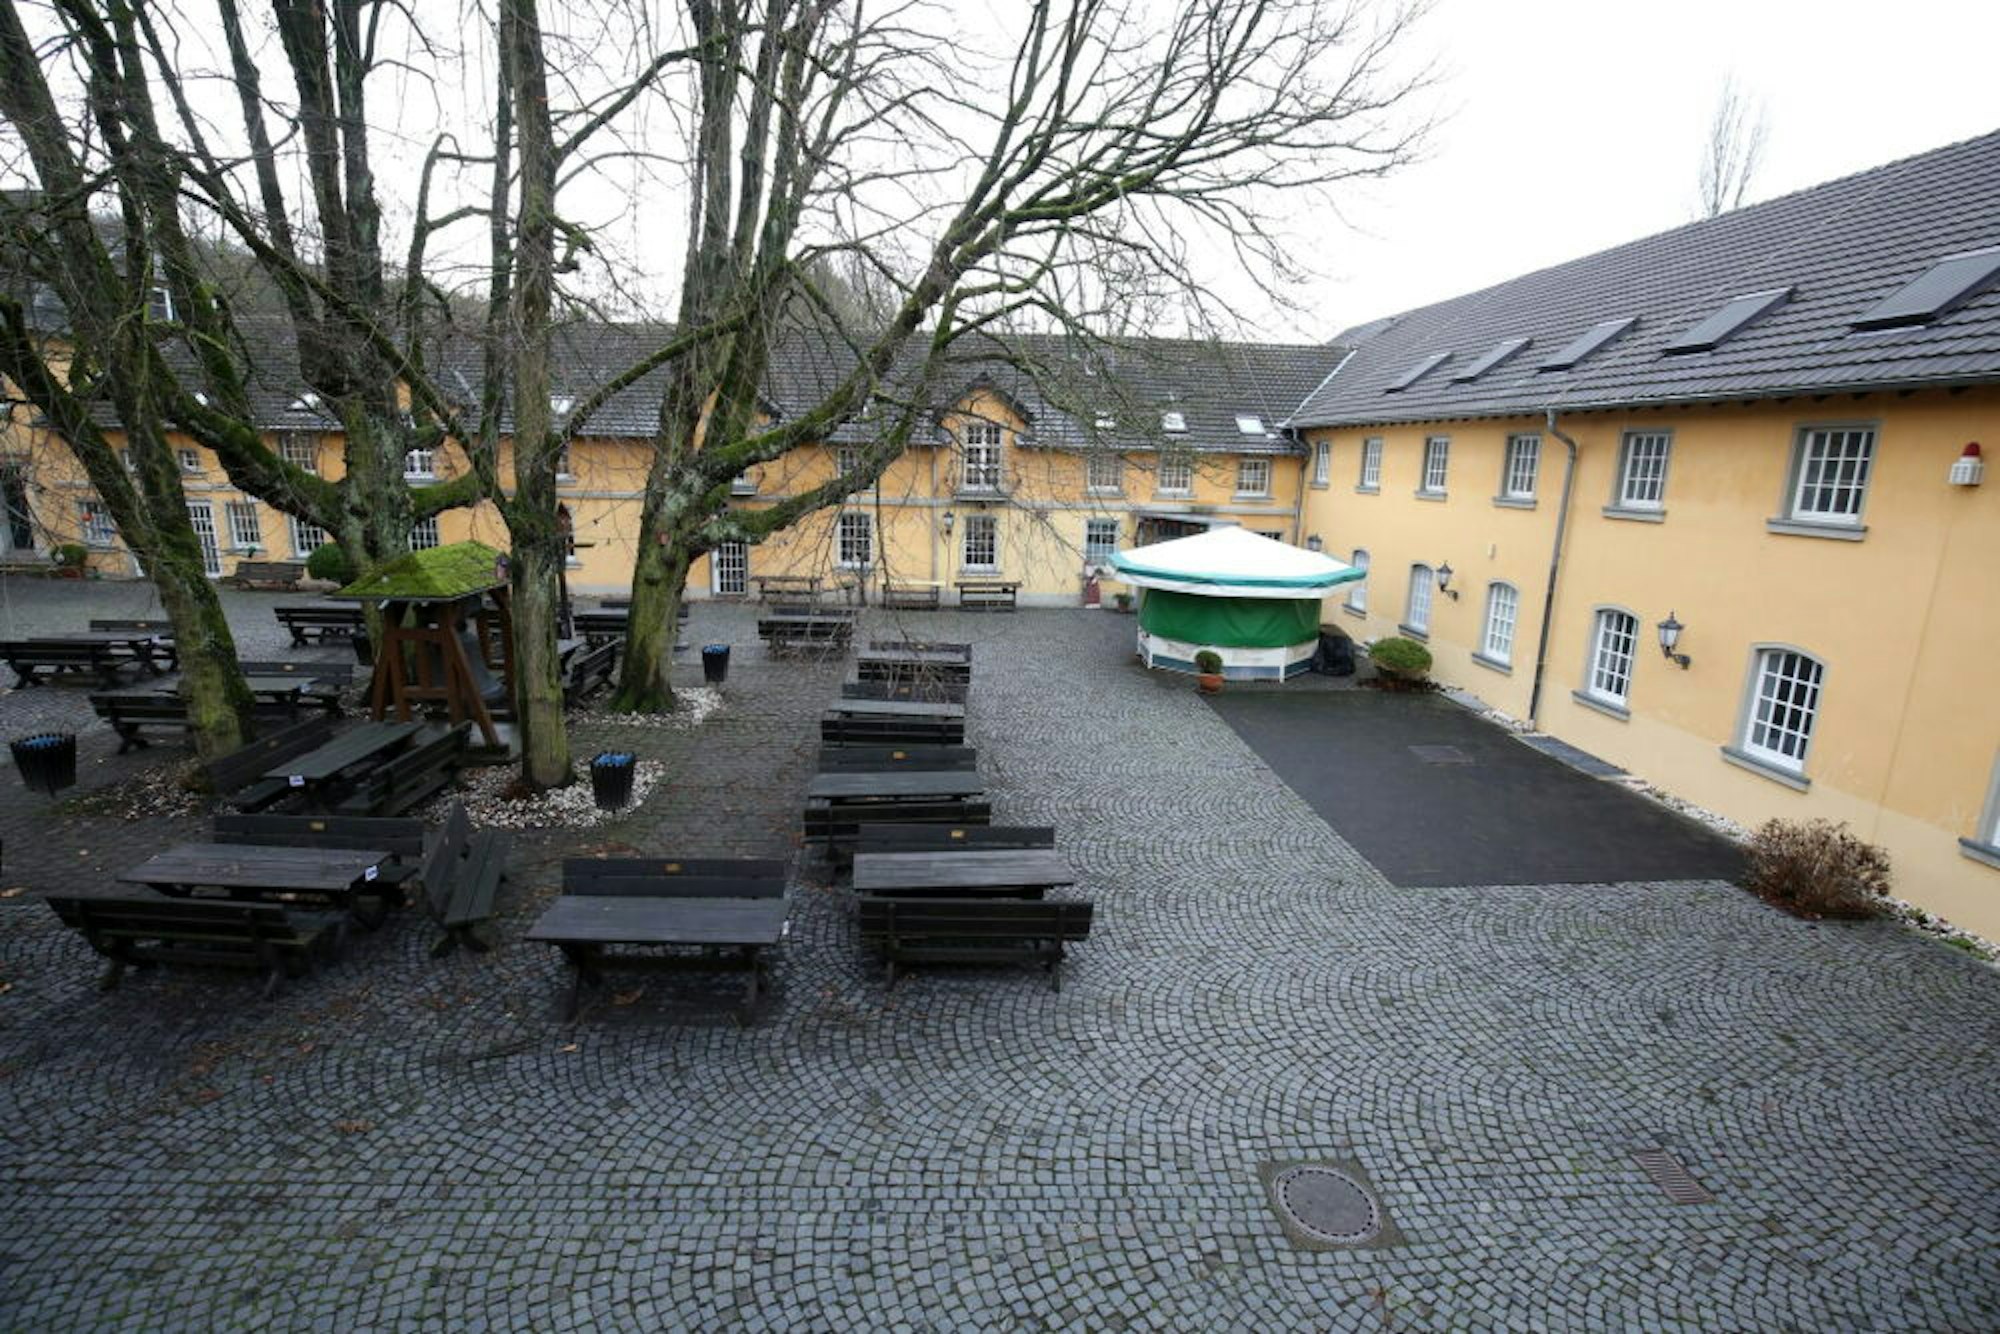 Blick in den Innenhof von Haus Schlesien, in das der gleichnamige Trägerverein im Laufe von Jahrzehnten viel Geld investiert hat.